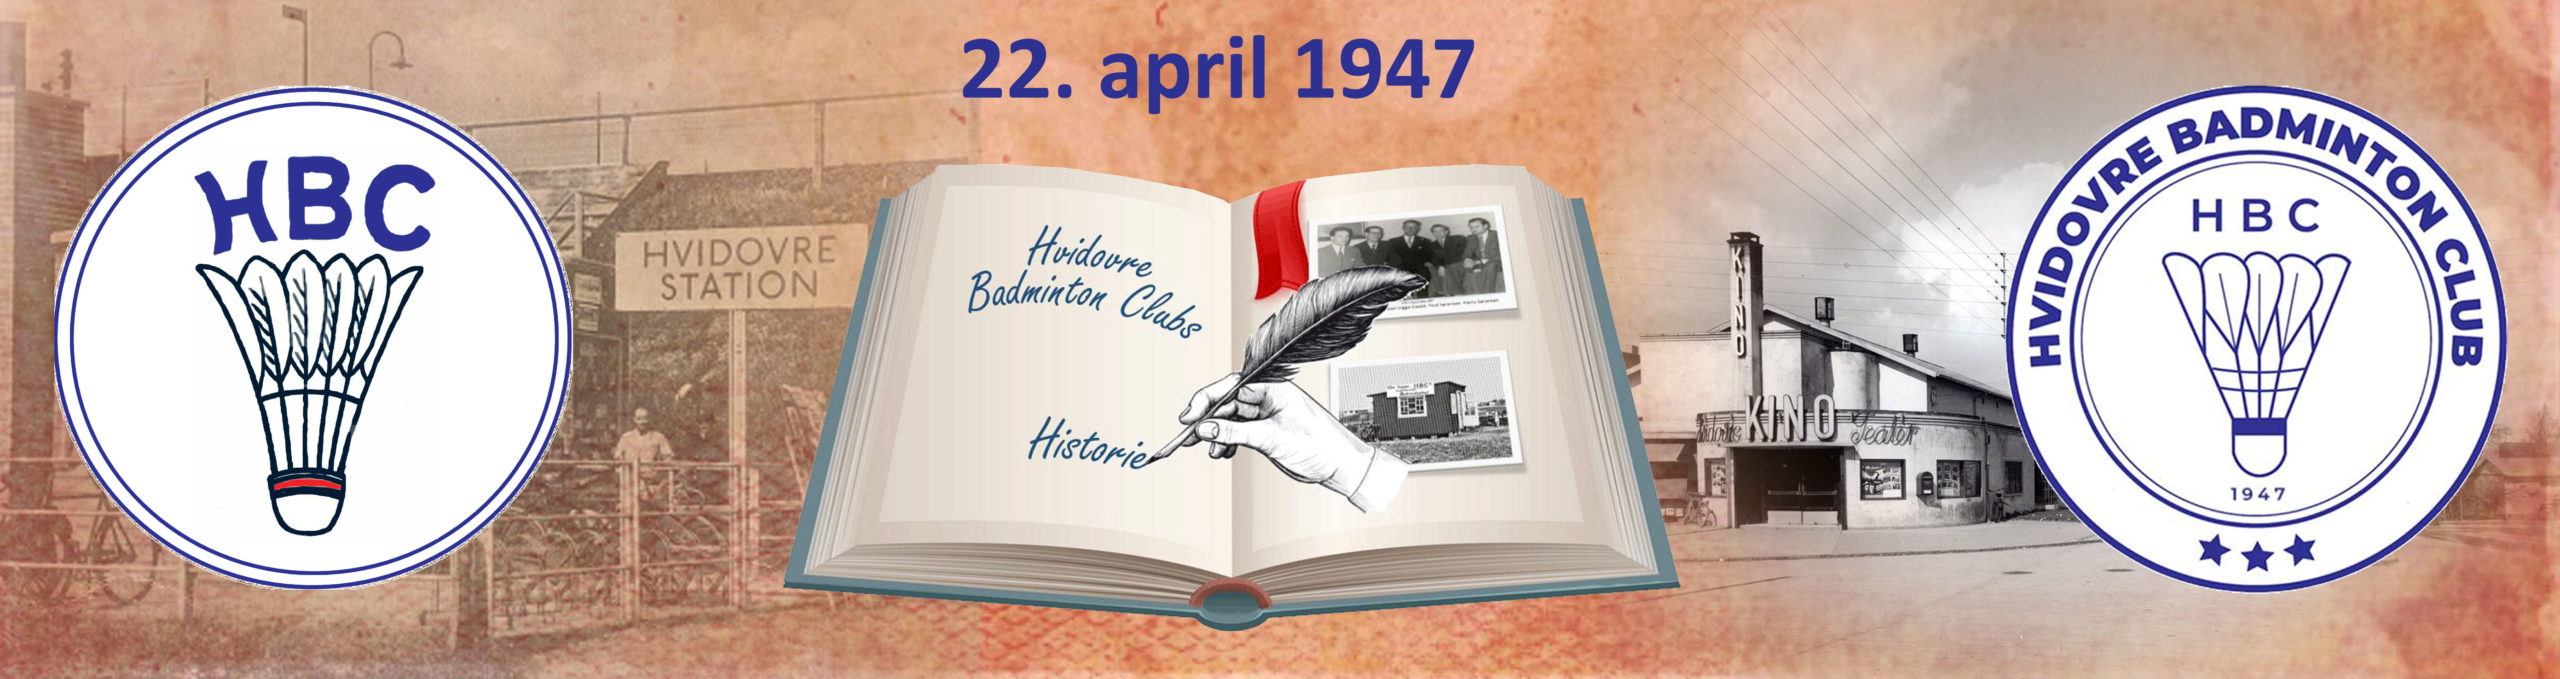 HBC-Historien-1947